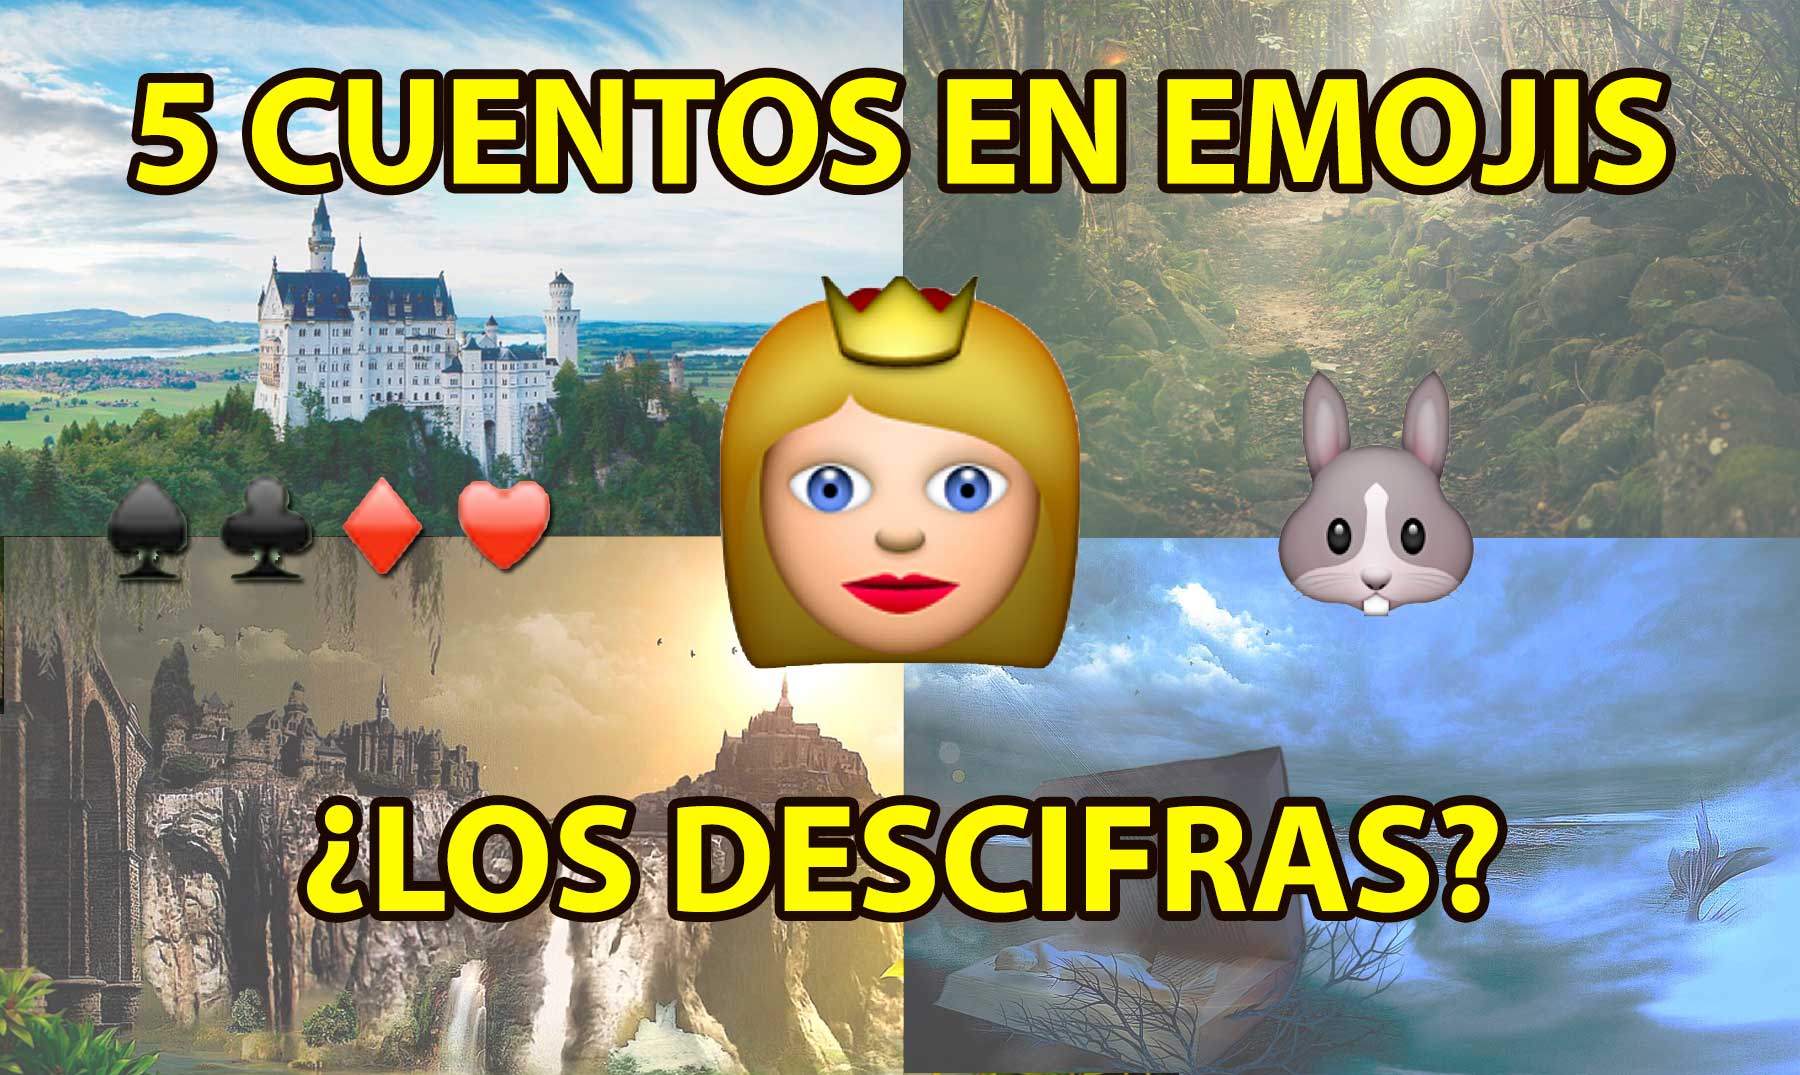 Puedes descifrar estos 5 cuentos en emojis?